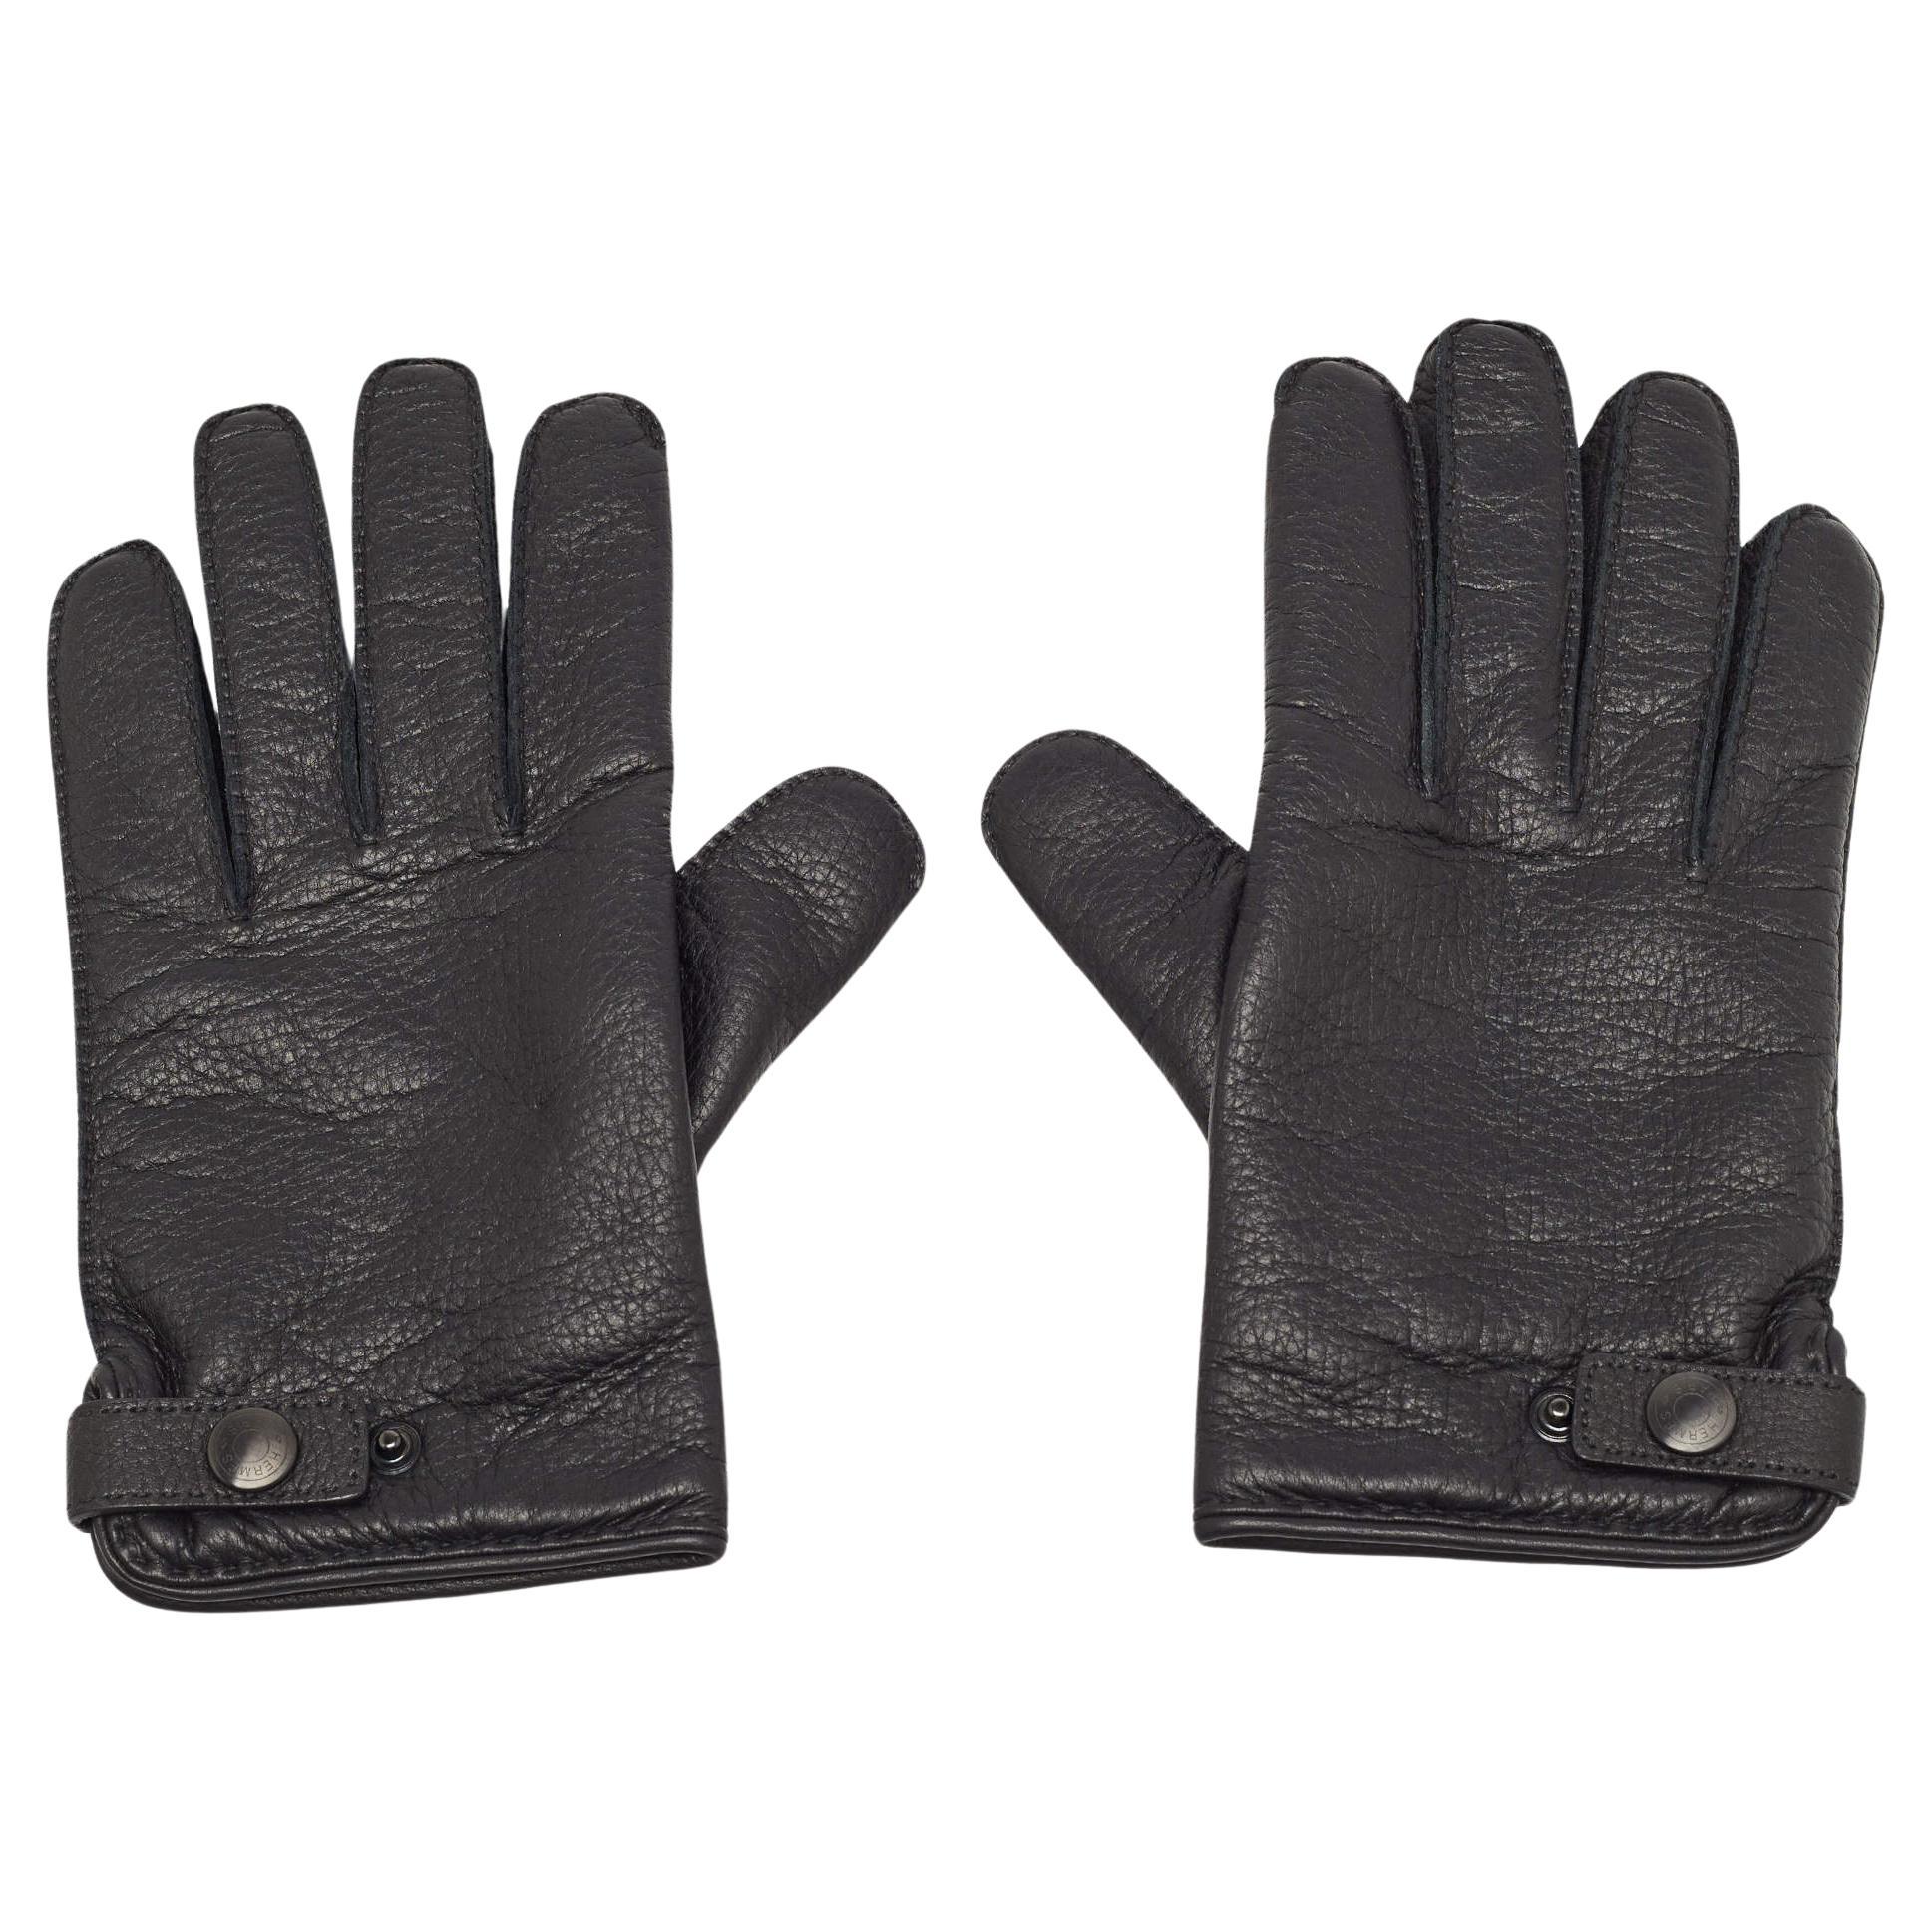 Hermes Black Deerskin and Cashmere Gloves Size 8.5